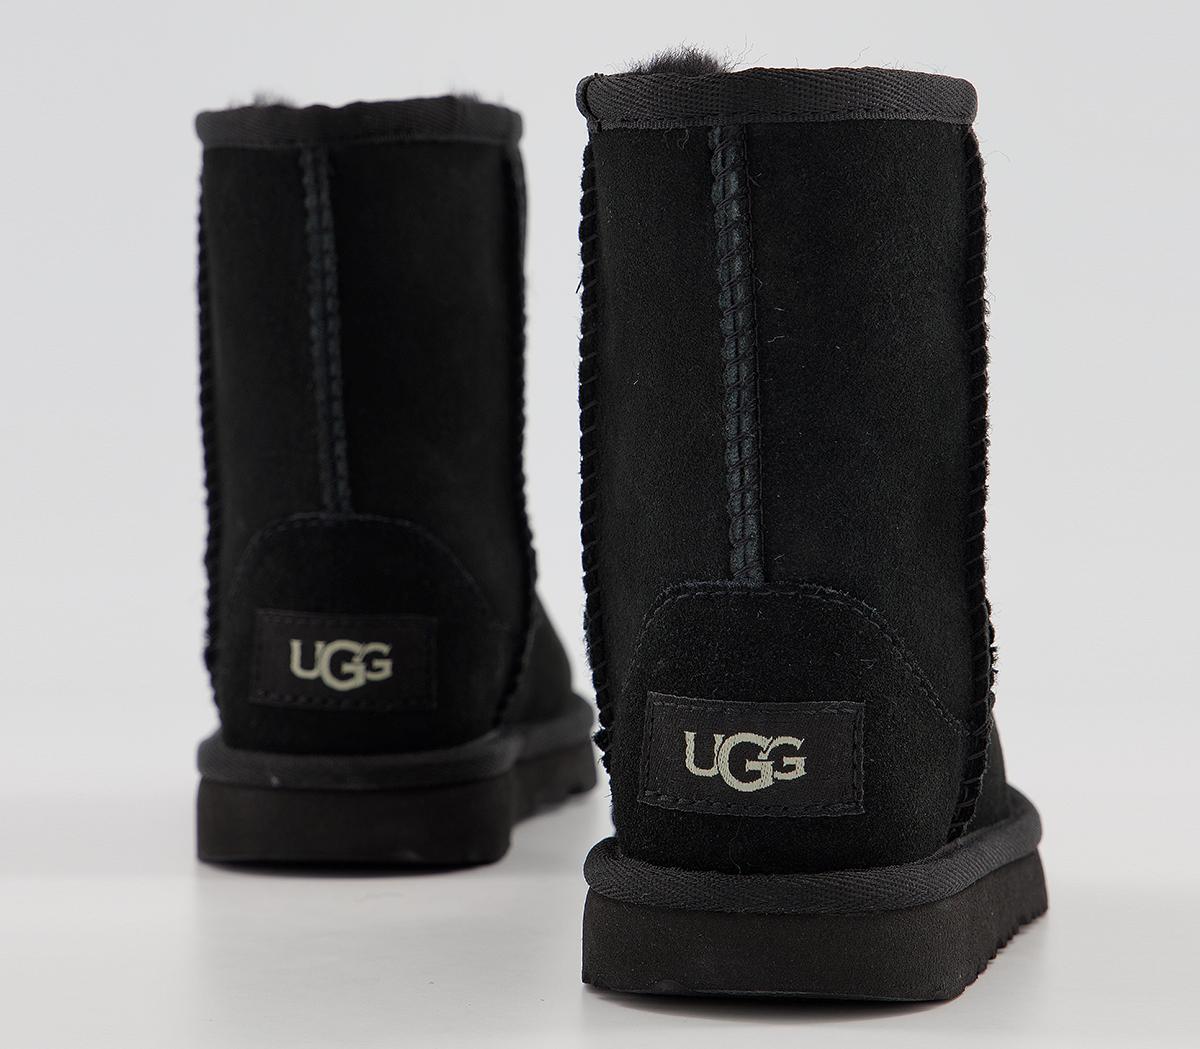 UGG Classic II Infant Boots Black - Unisex